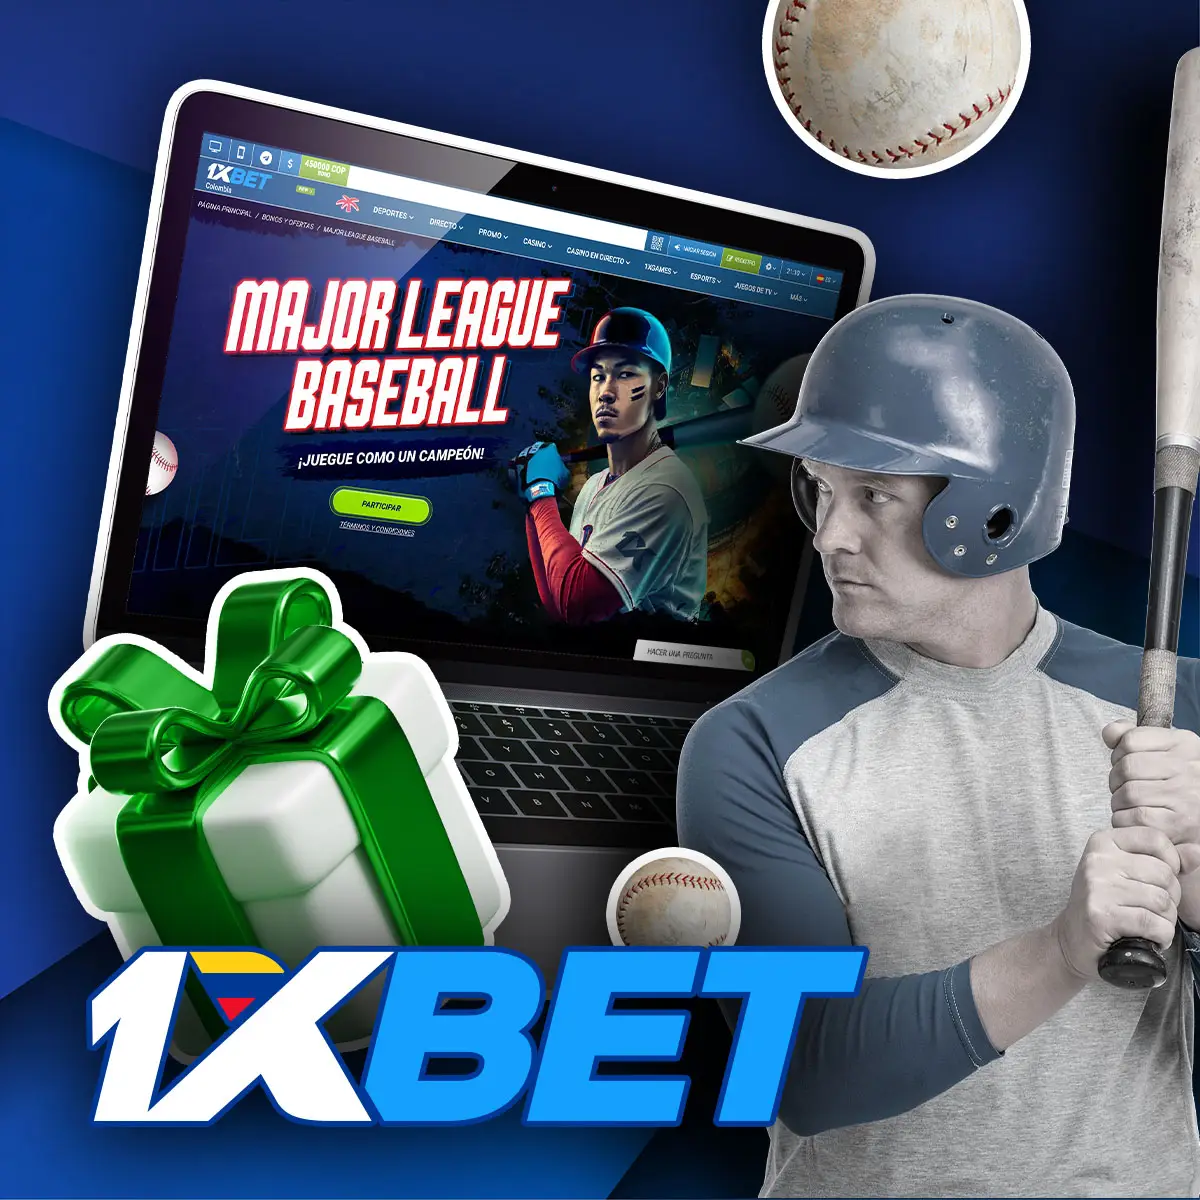 Cómo conseguir el bono de la Major League Baseball en la aplicación móvil 1xBet en Colombia